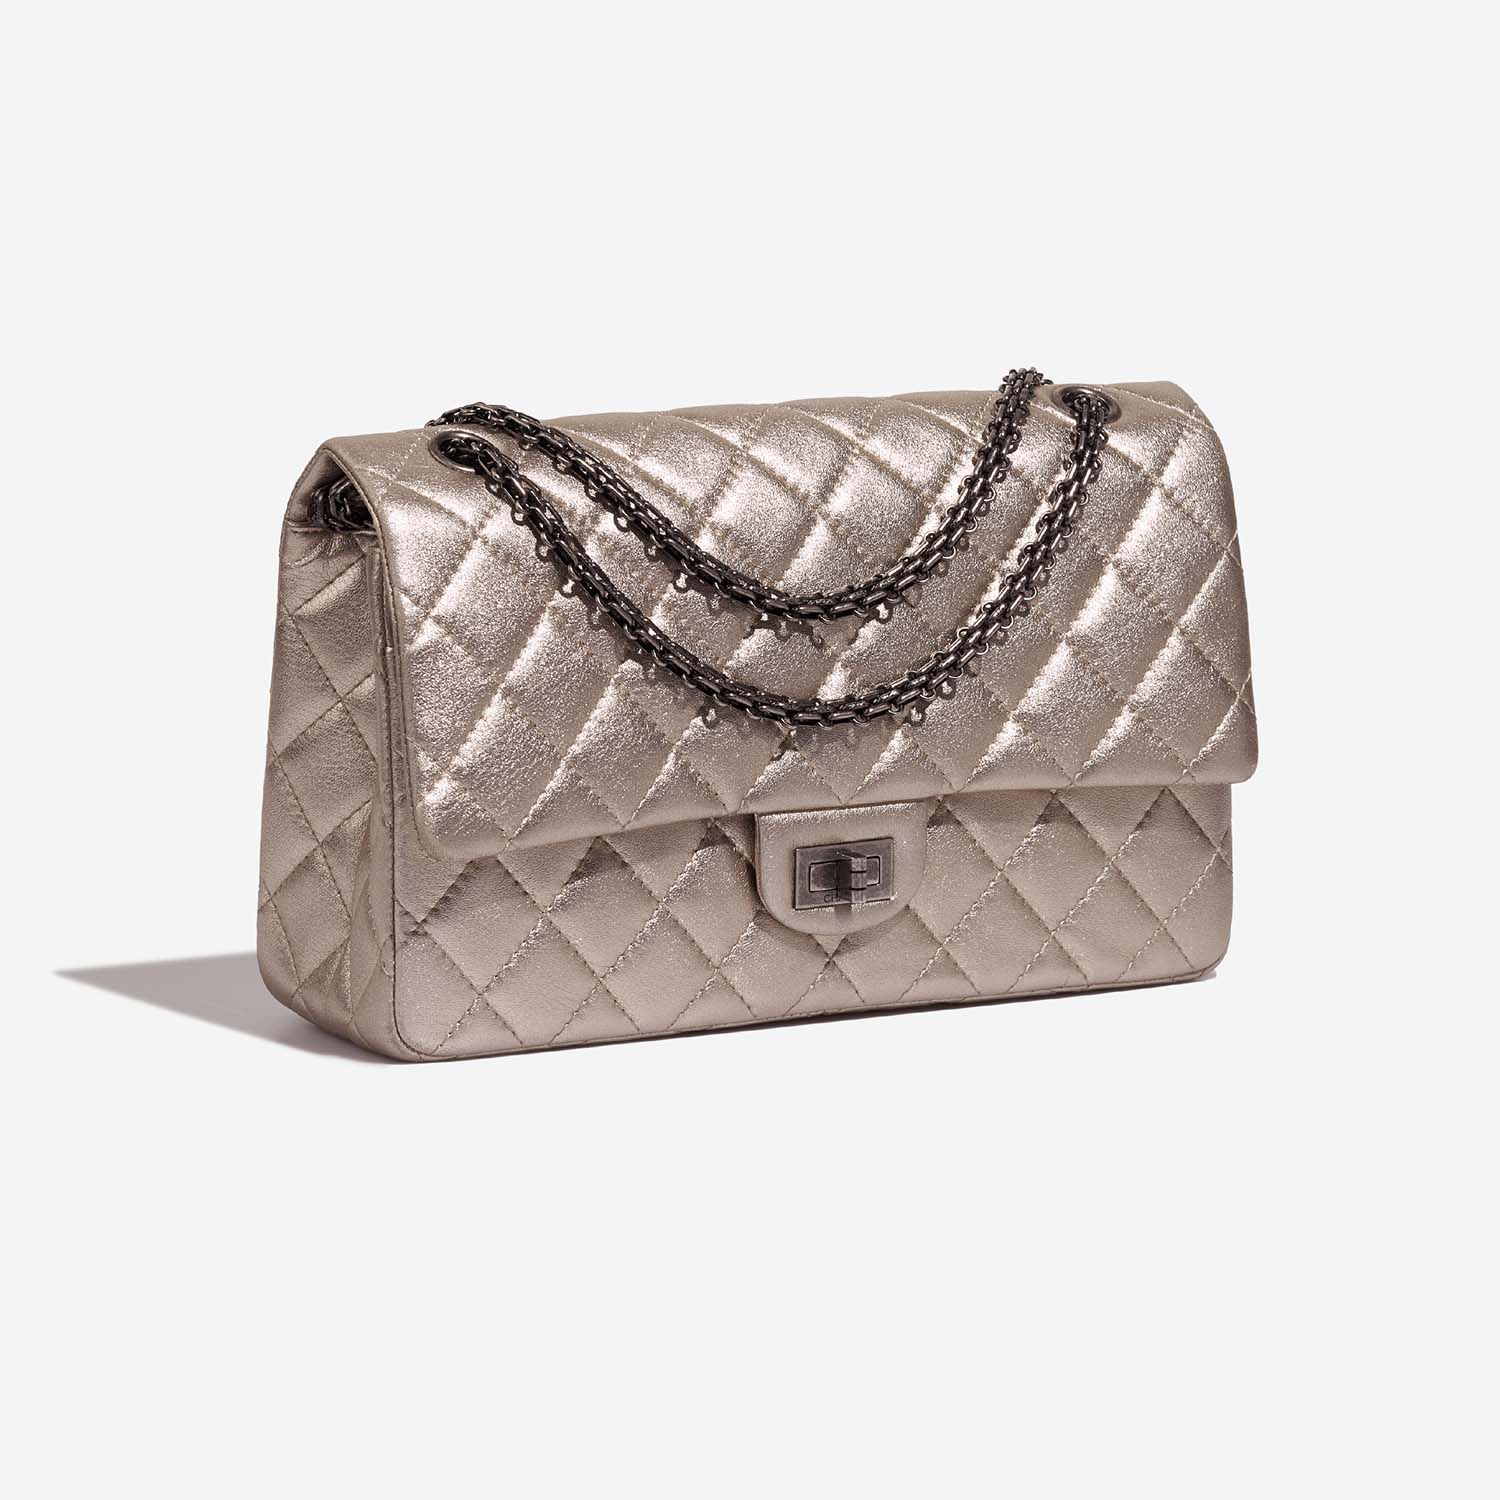 Chanel 255Reissue 226 ShinyChampagne Side Front | Verkaufen Sie Ihre Designer-Tasche auf Saclab.com